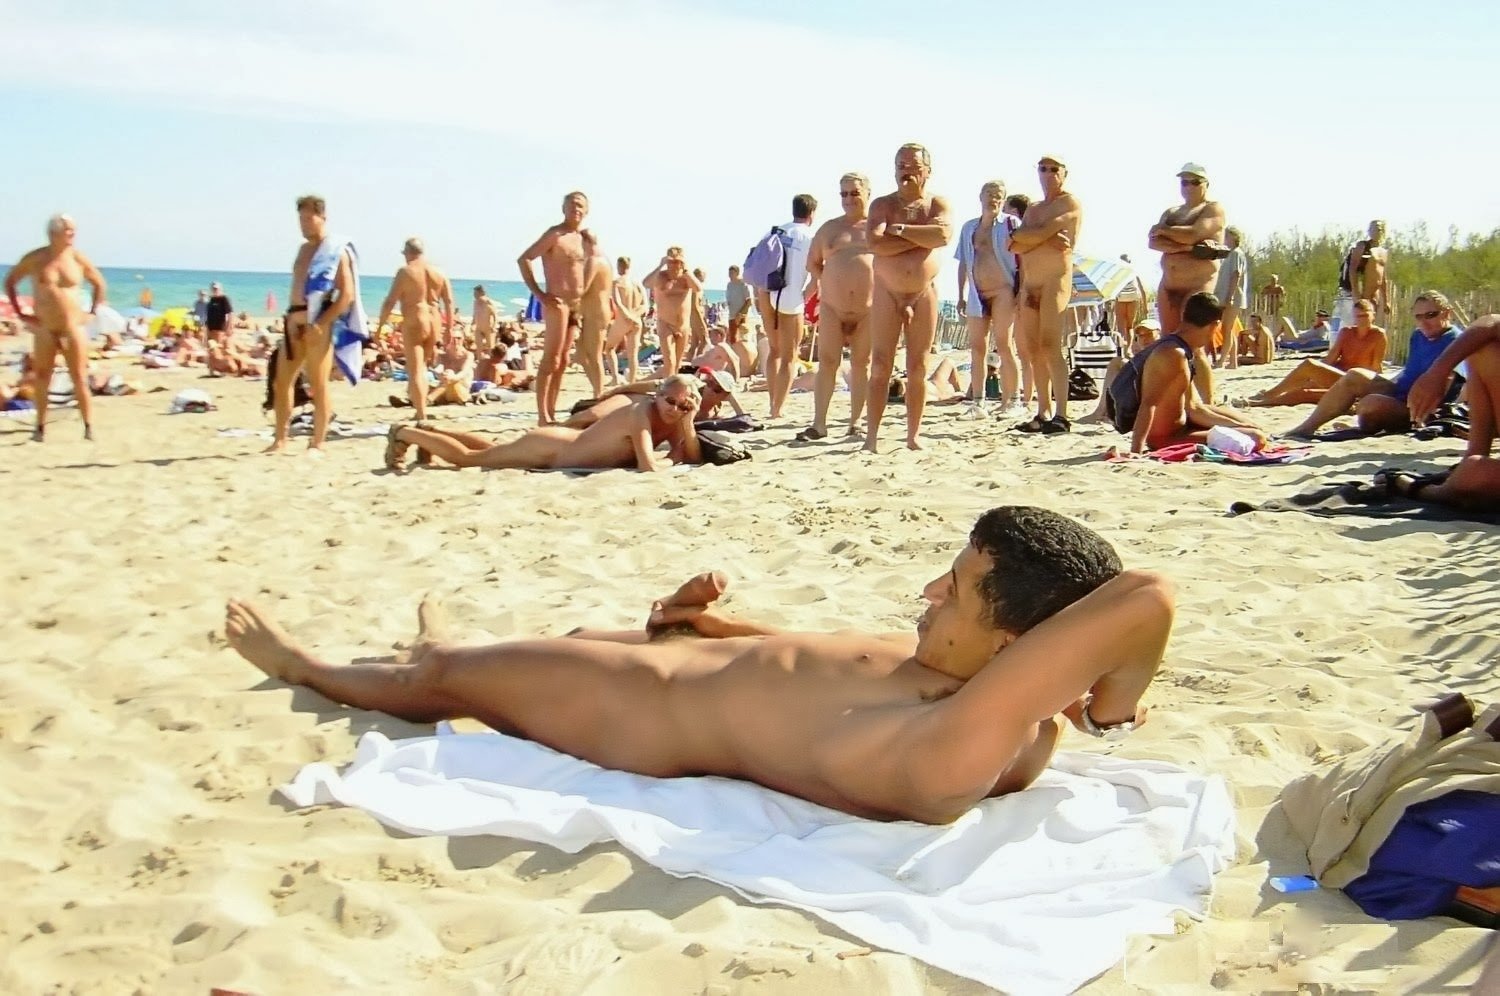 Европа отдыхает нудисткий пляж голые мужики (61 фото) .